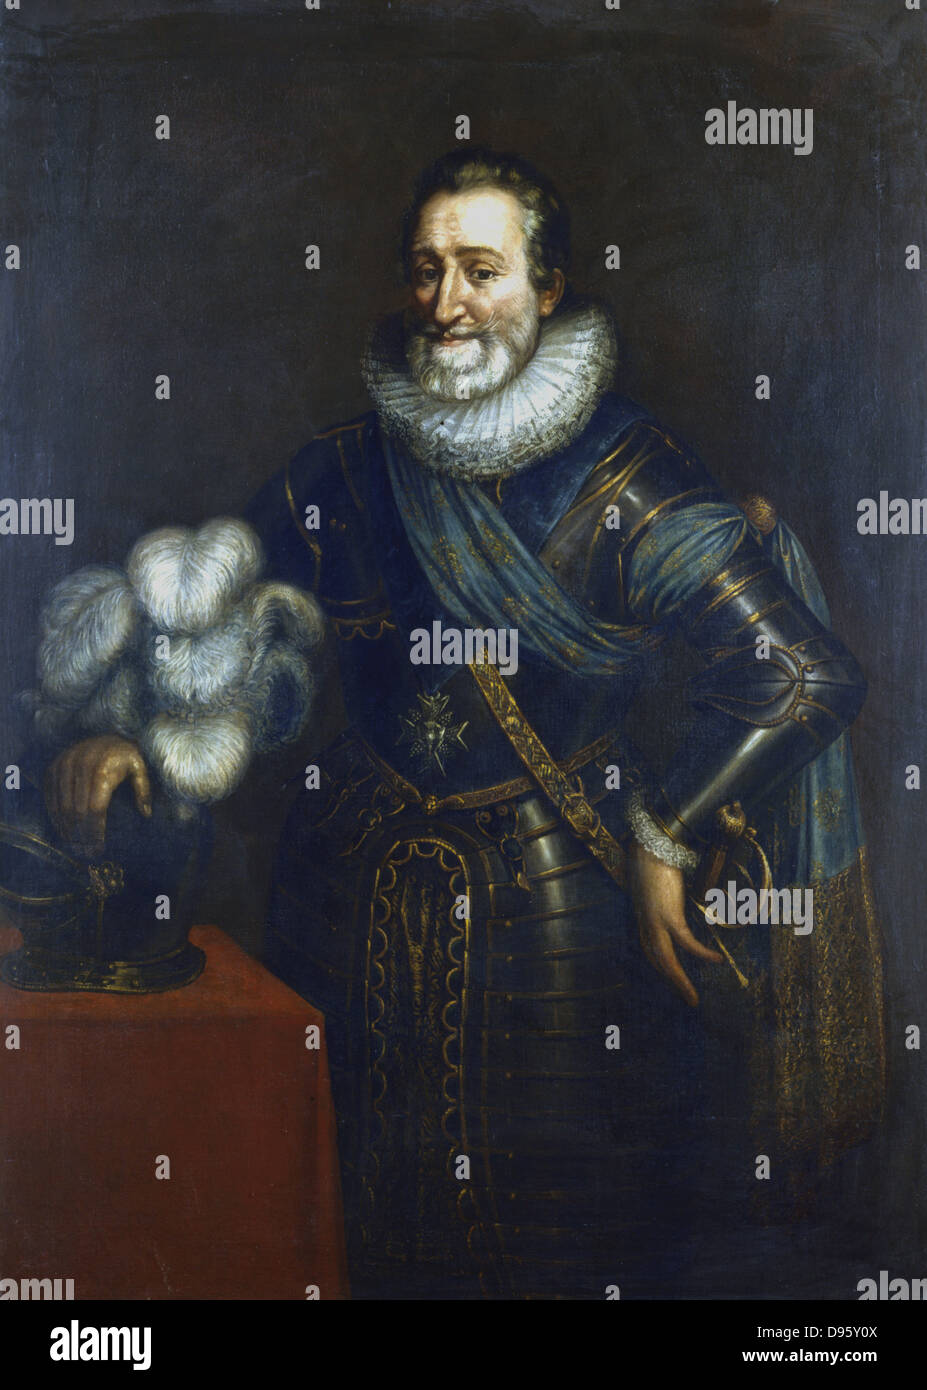 Heinrich IV. (1553-1619), König von Navarra 1572, König von Frankreich von 1589. Porträt in der Rüstung, zurückzuführen auf Jakob Bunel (1550-1614). Private Sammlung. Stockfoto